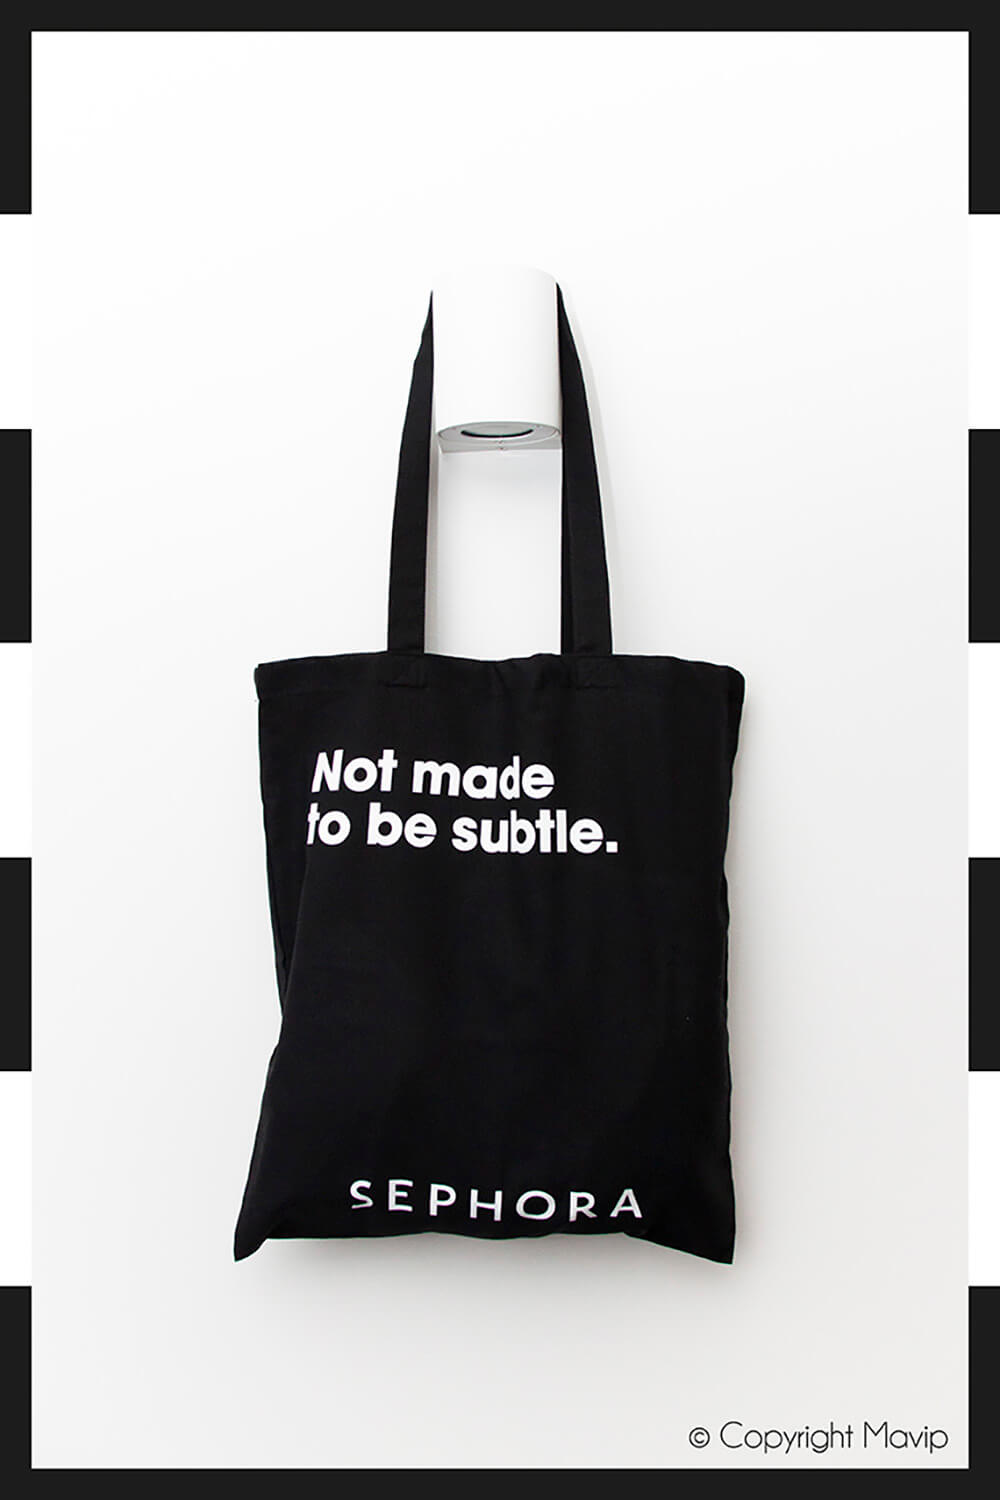 Tote bags réalisés pour Sephora par Mavip